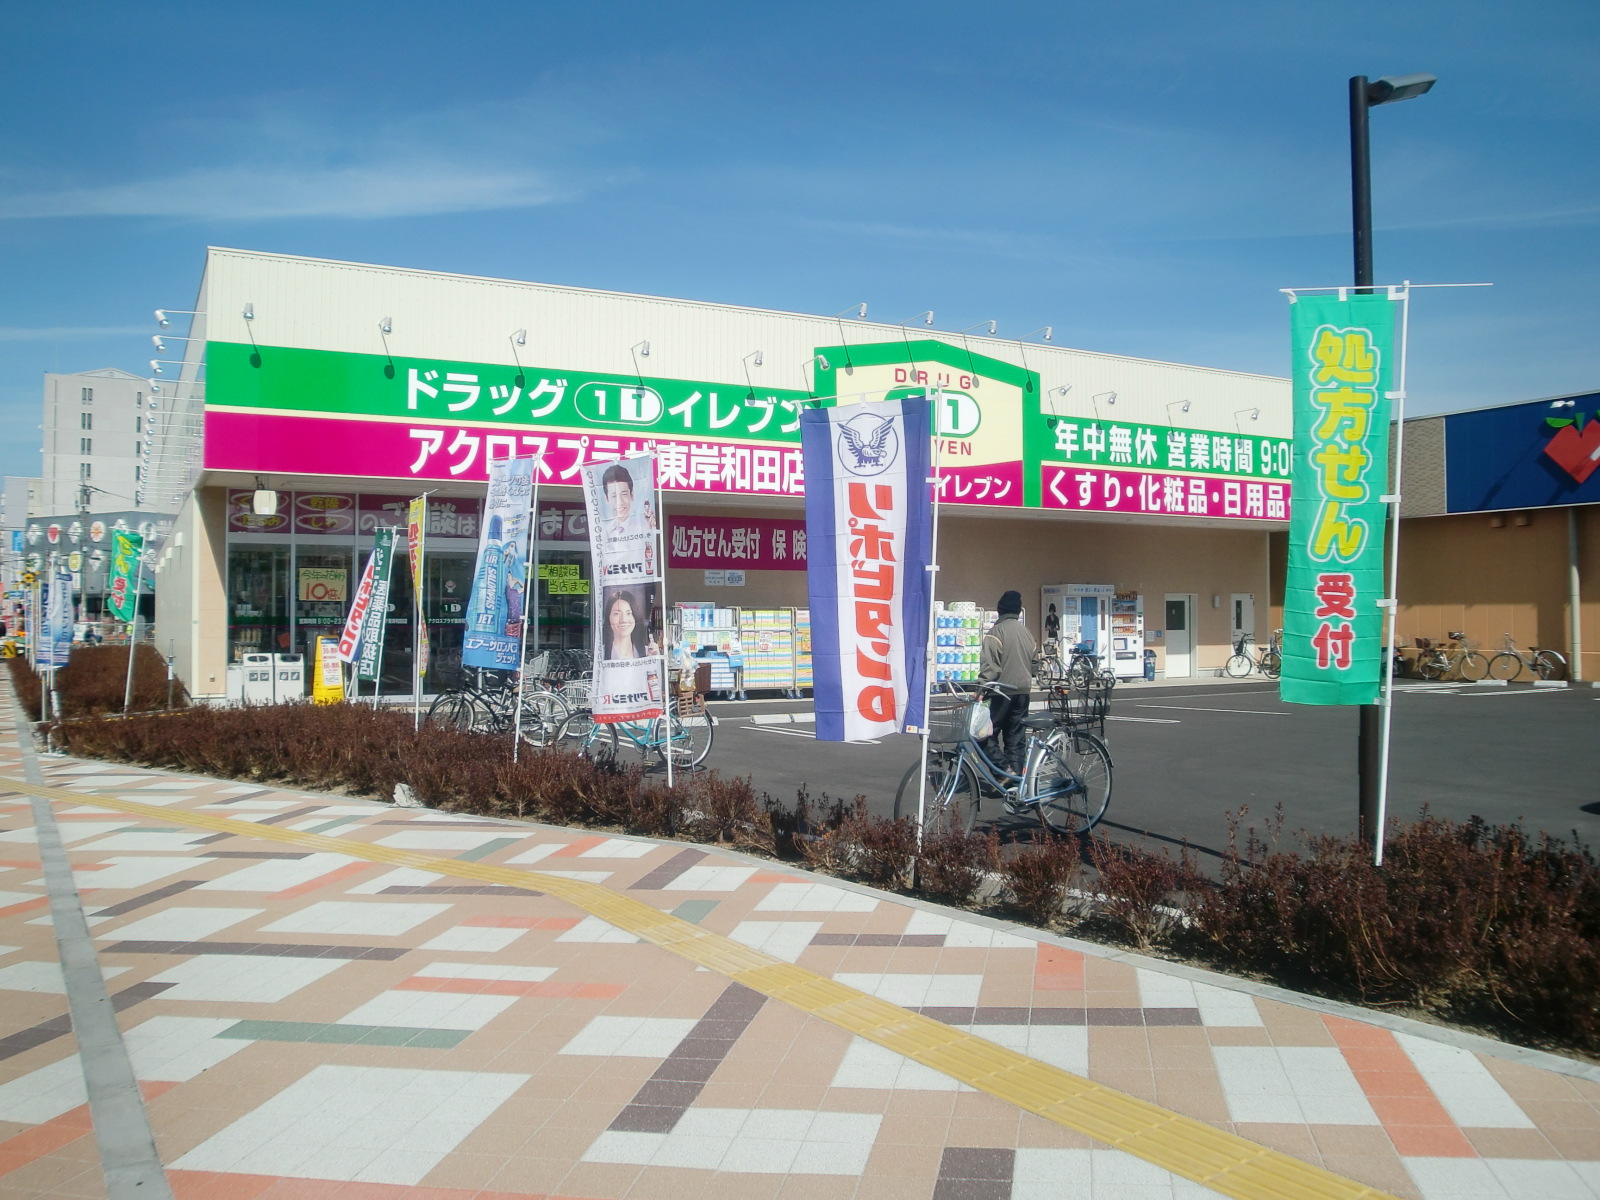 Dorakkusutoa. Super Drug Eleven east Kishiwada shop 1336m until (drugstore)